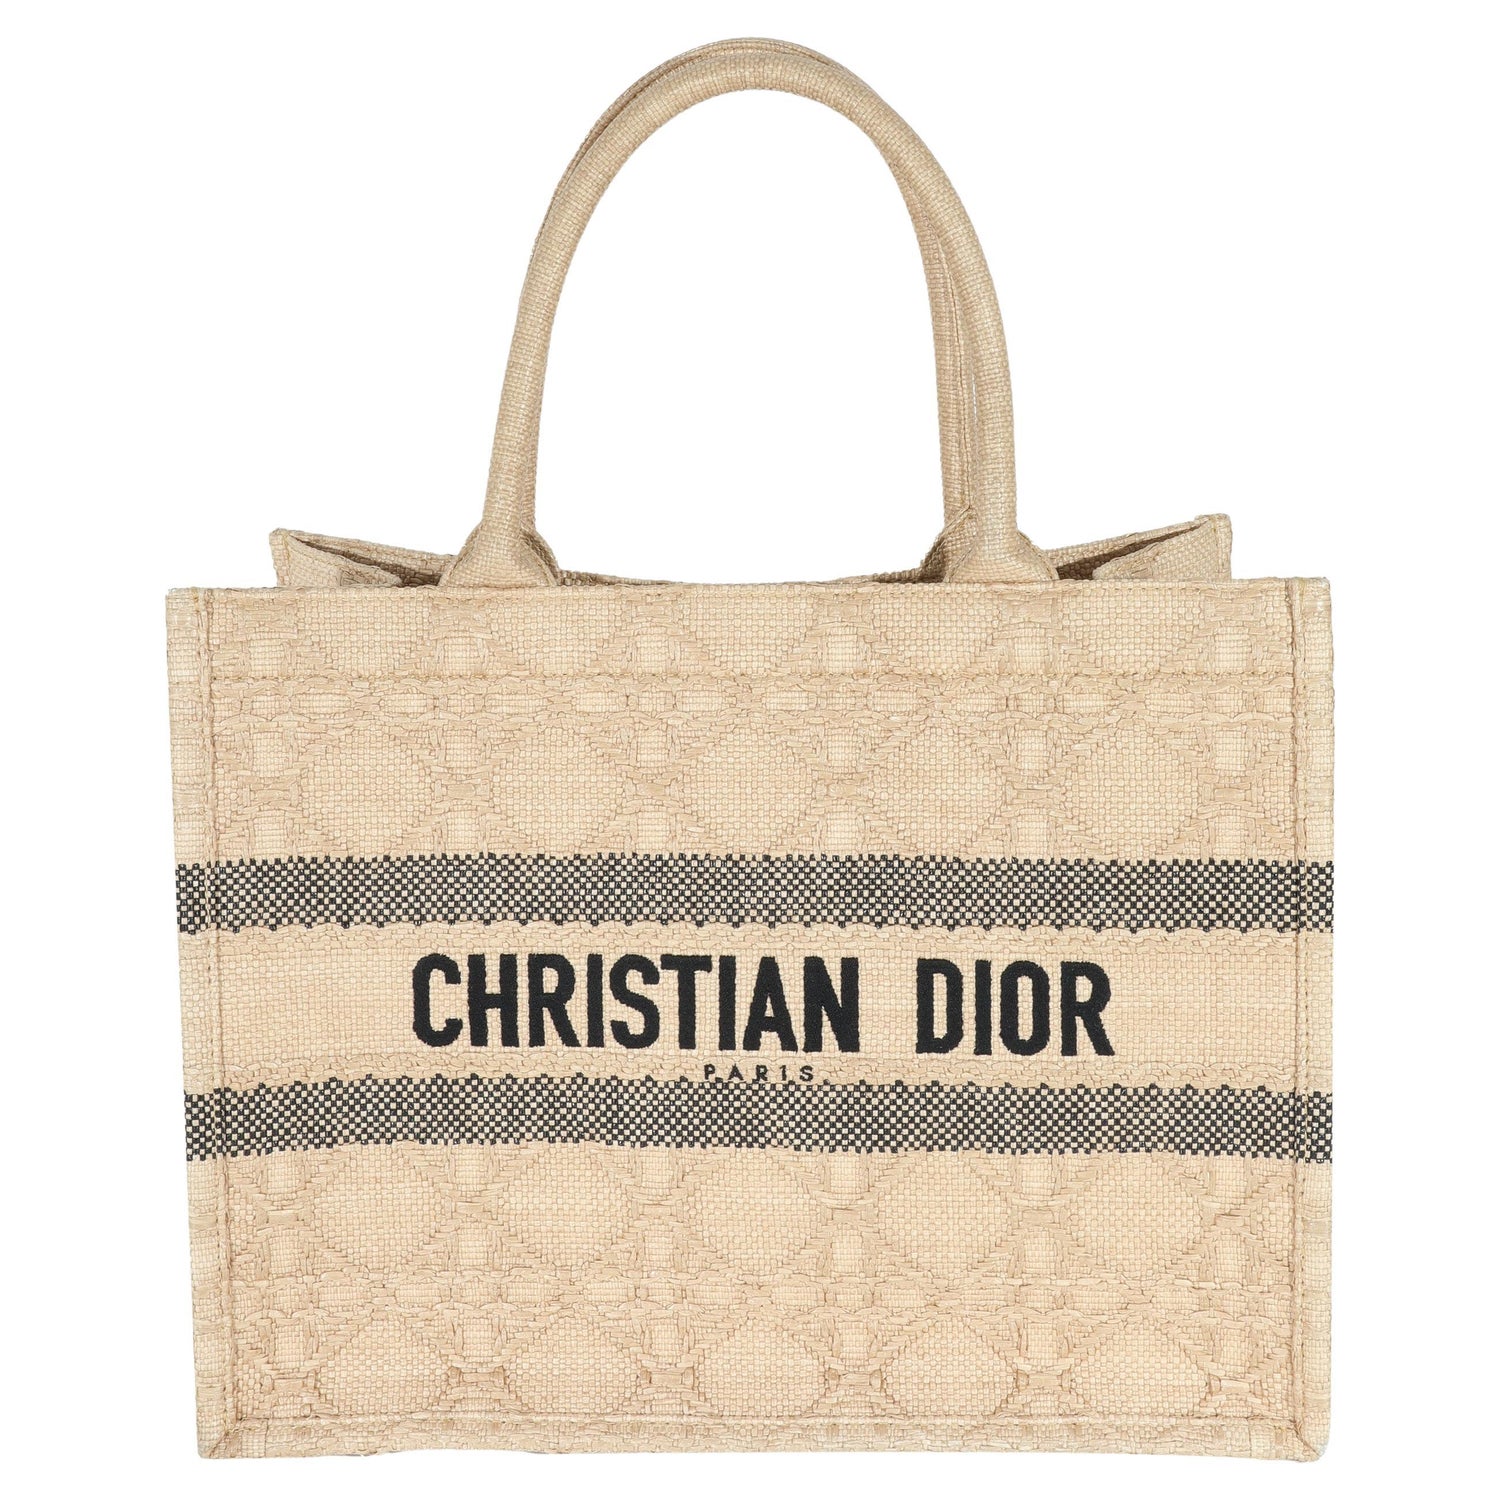 Christian Dior Straw Handbags - 3 For Sale on 1stDibs